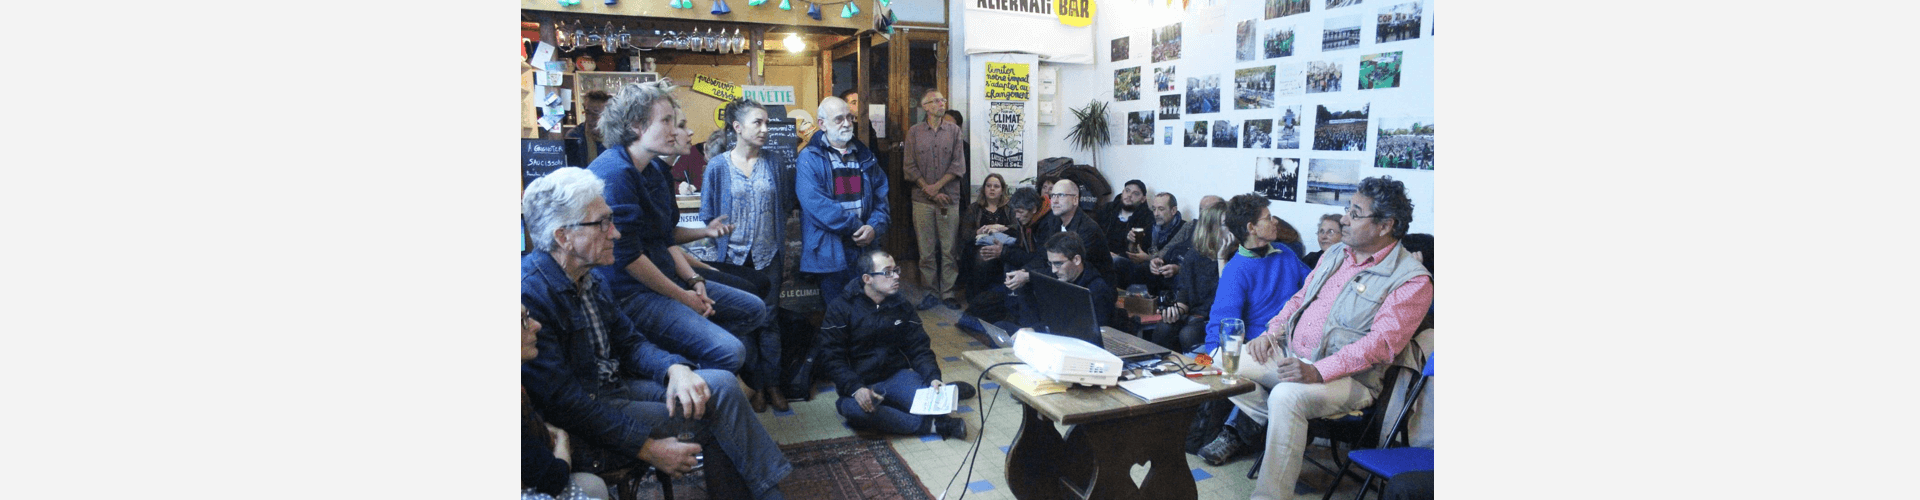 L’Alternatibar a ouvert ses portes à Lyon ! : Image à la une